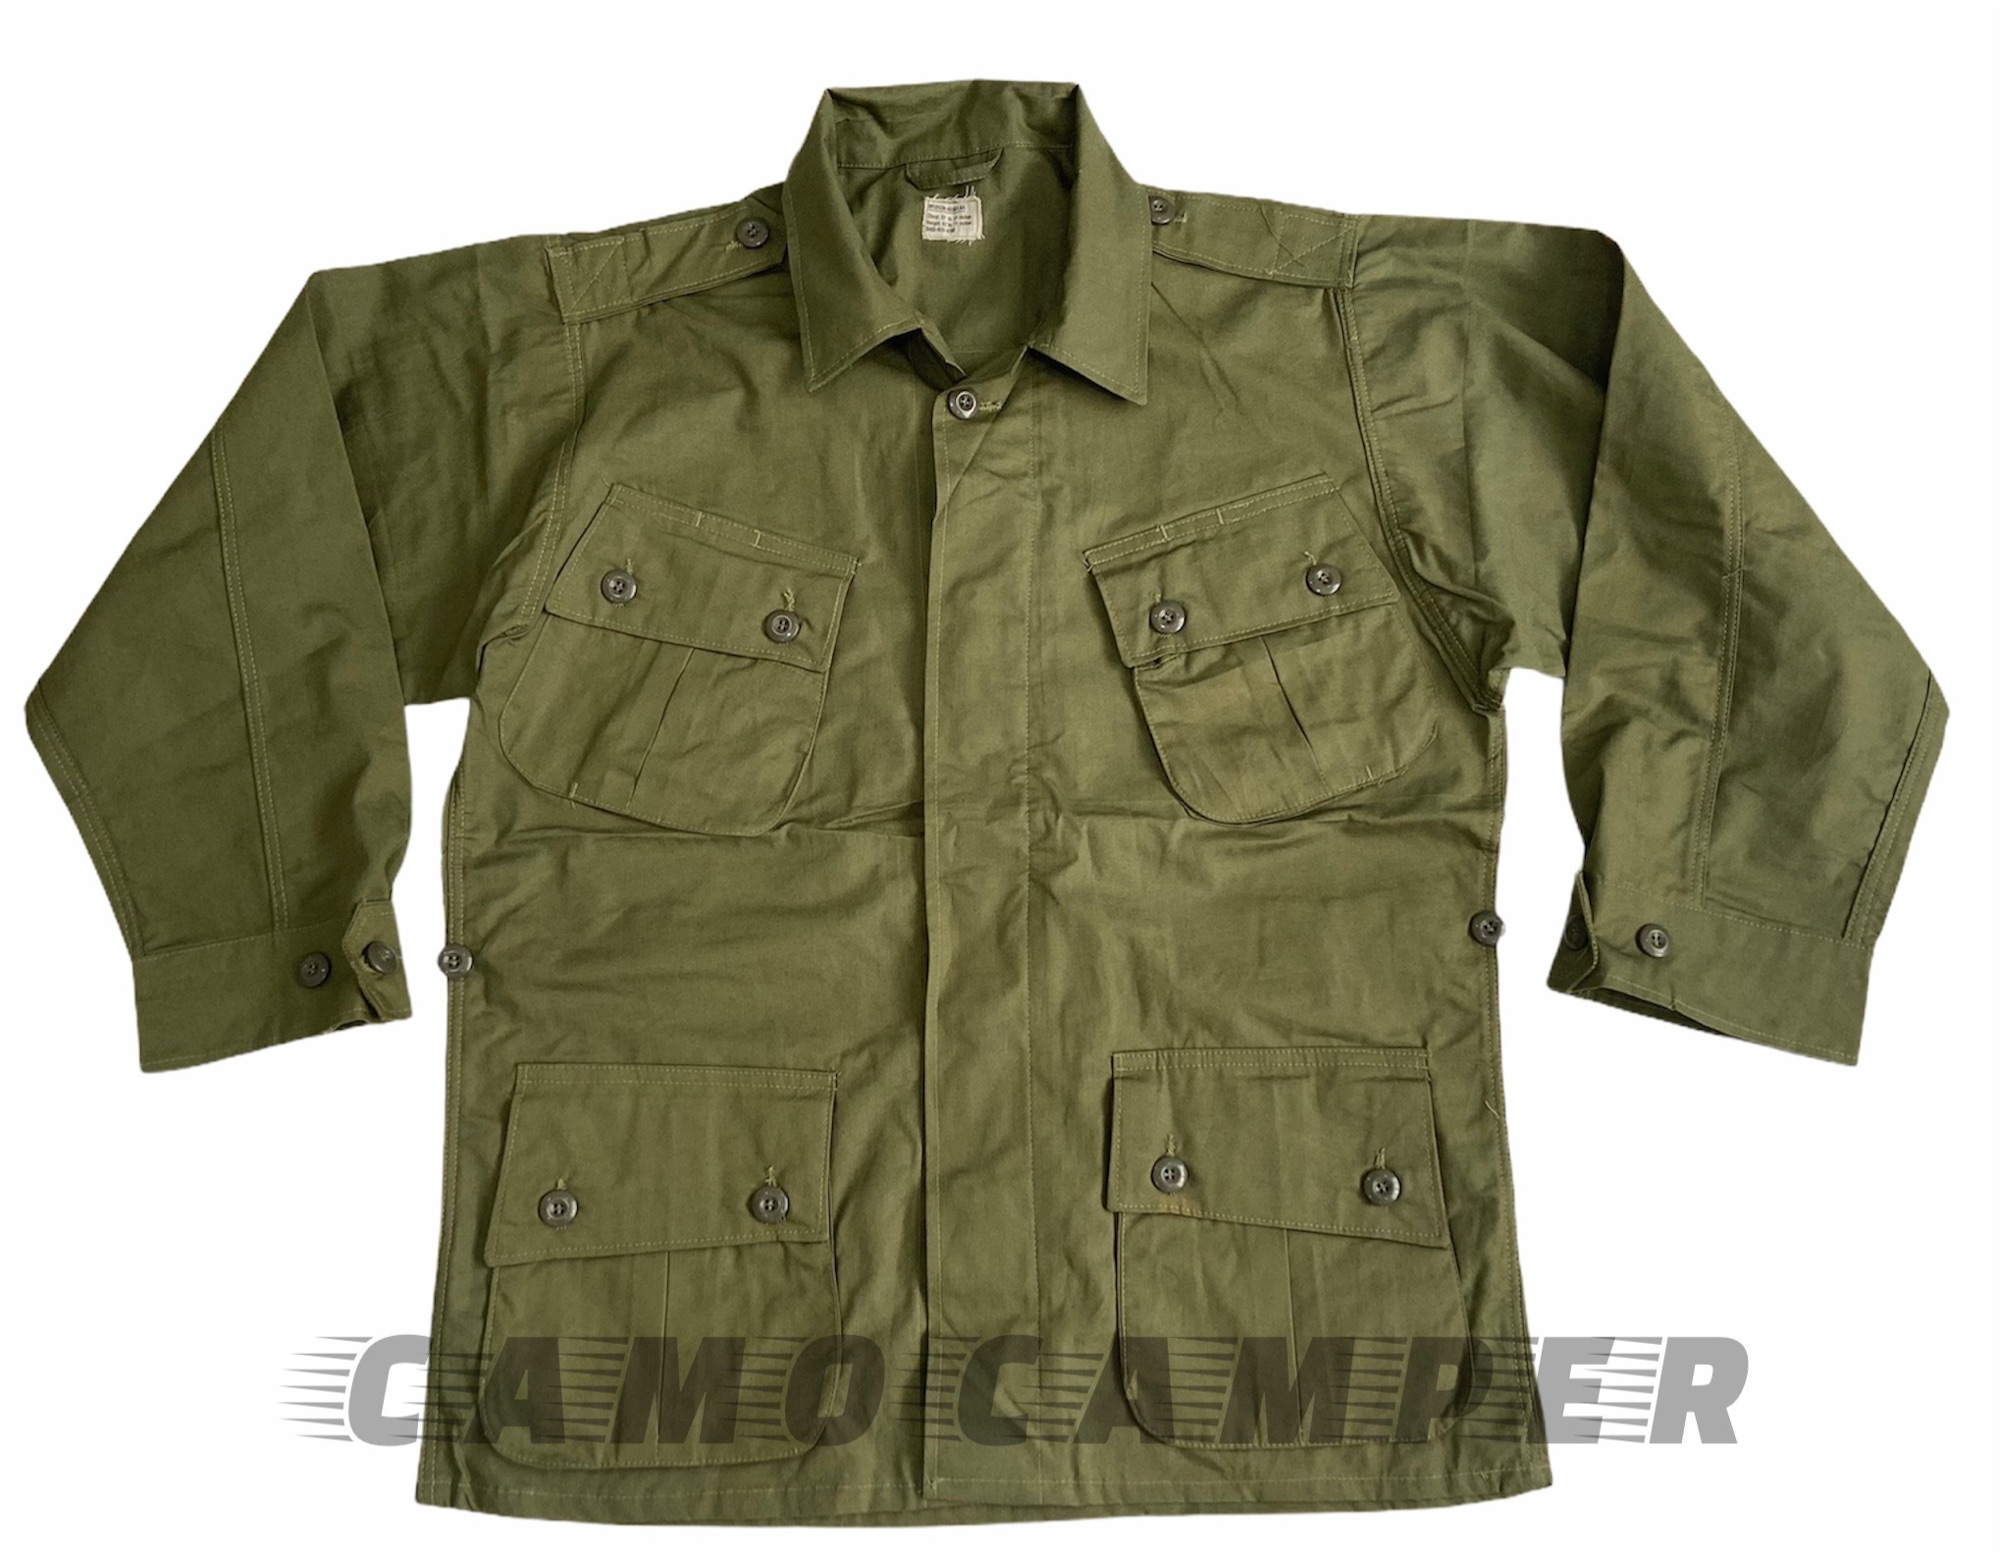 เสื้อทหาร เสื้อกระเป๋าเฉียง เวียดนาม OG  Repro Pattern Vietnam  War ผู้ที่ชื่นชอบแนว Military style สินค้ามีพร้อมส่ง